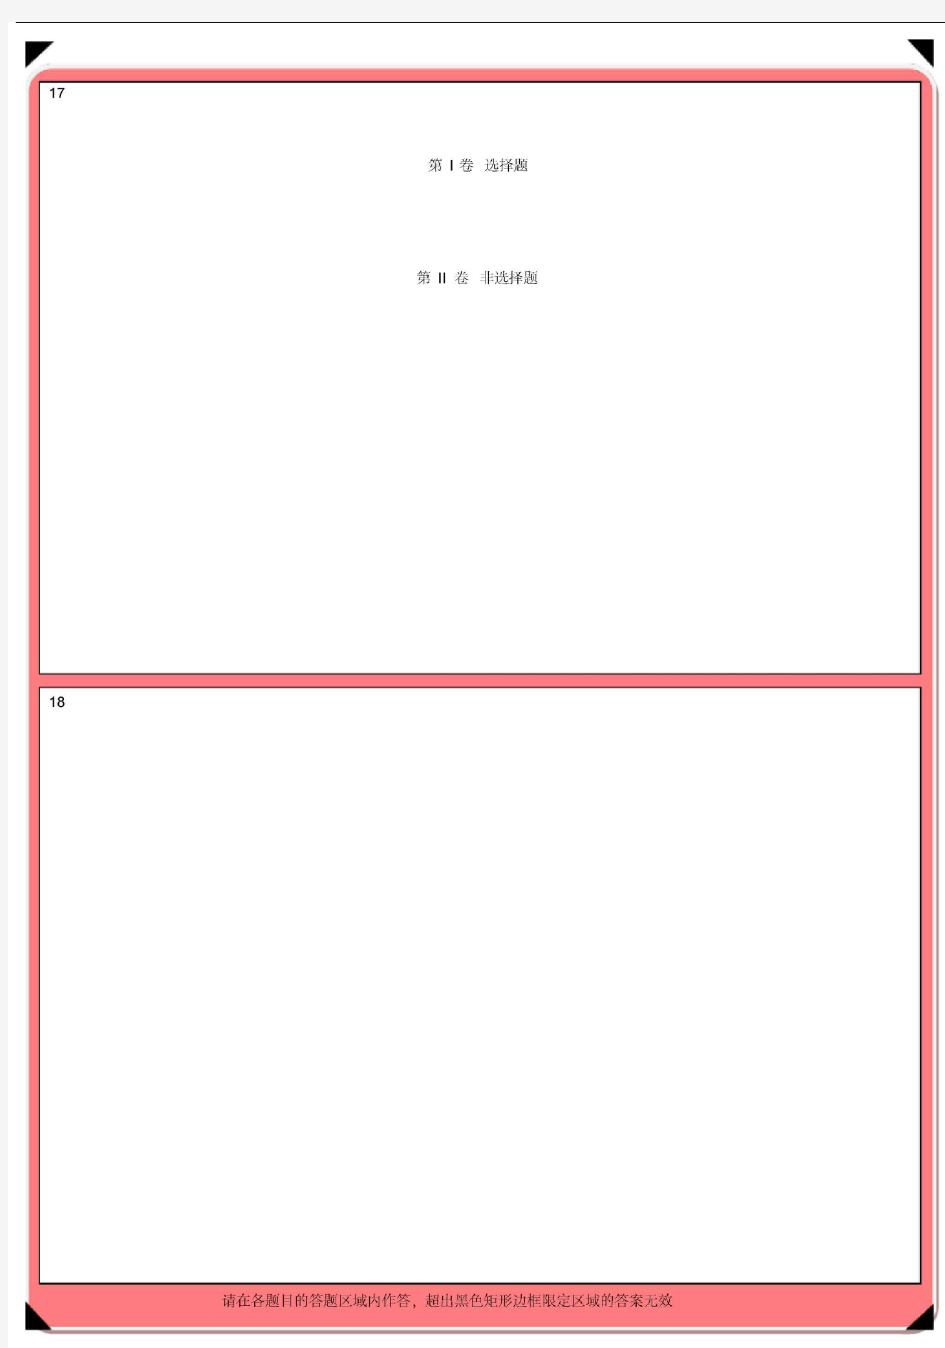 考研数学答题卡--彩印A4打印版第一页